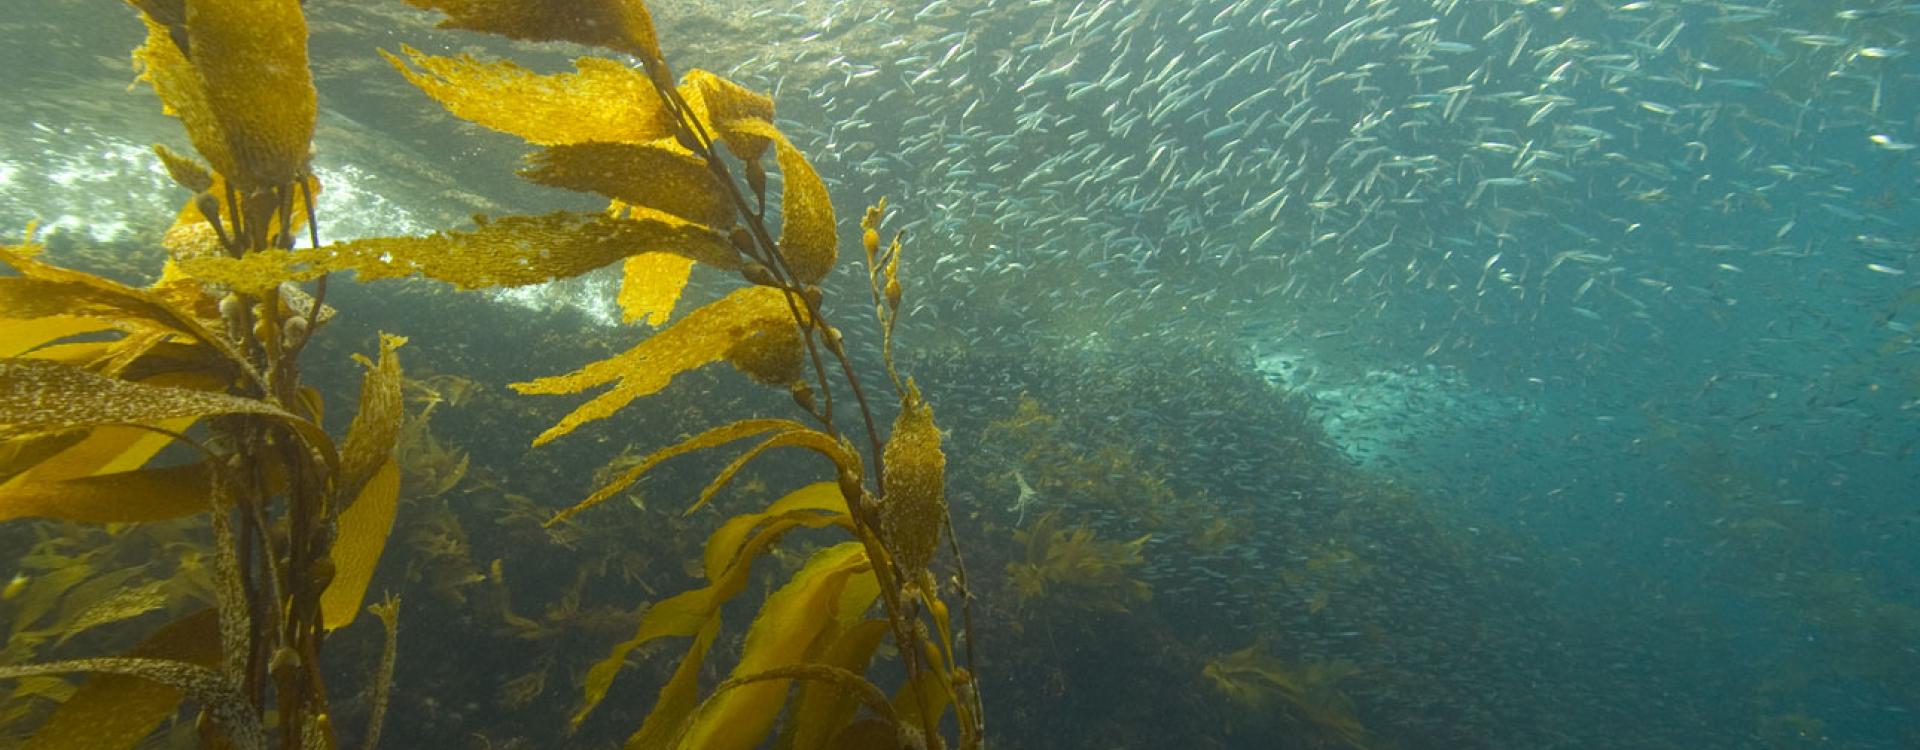 Sardines in kelp